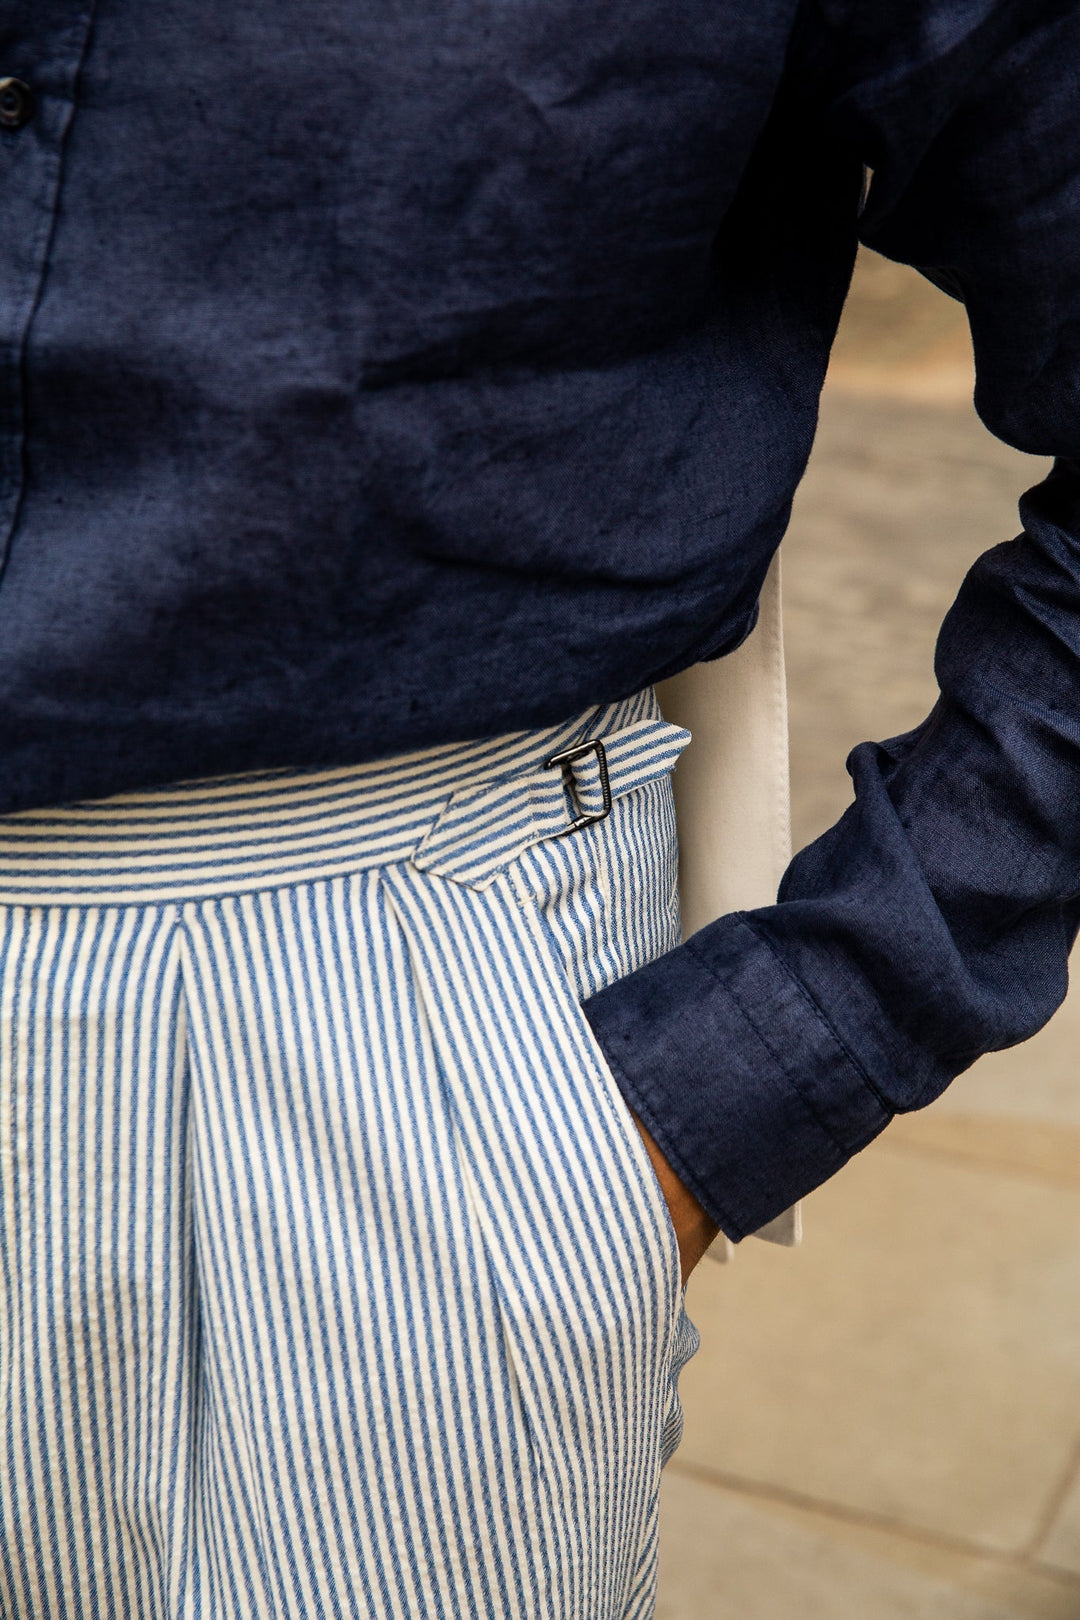 Grant Seersucker Stripe Wool Trousers-Grant-Kit Blake-Savile Row Trousers